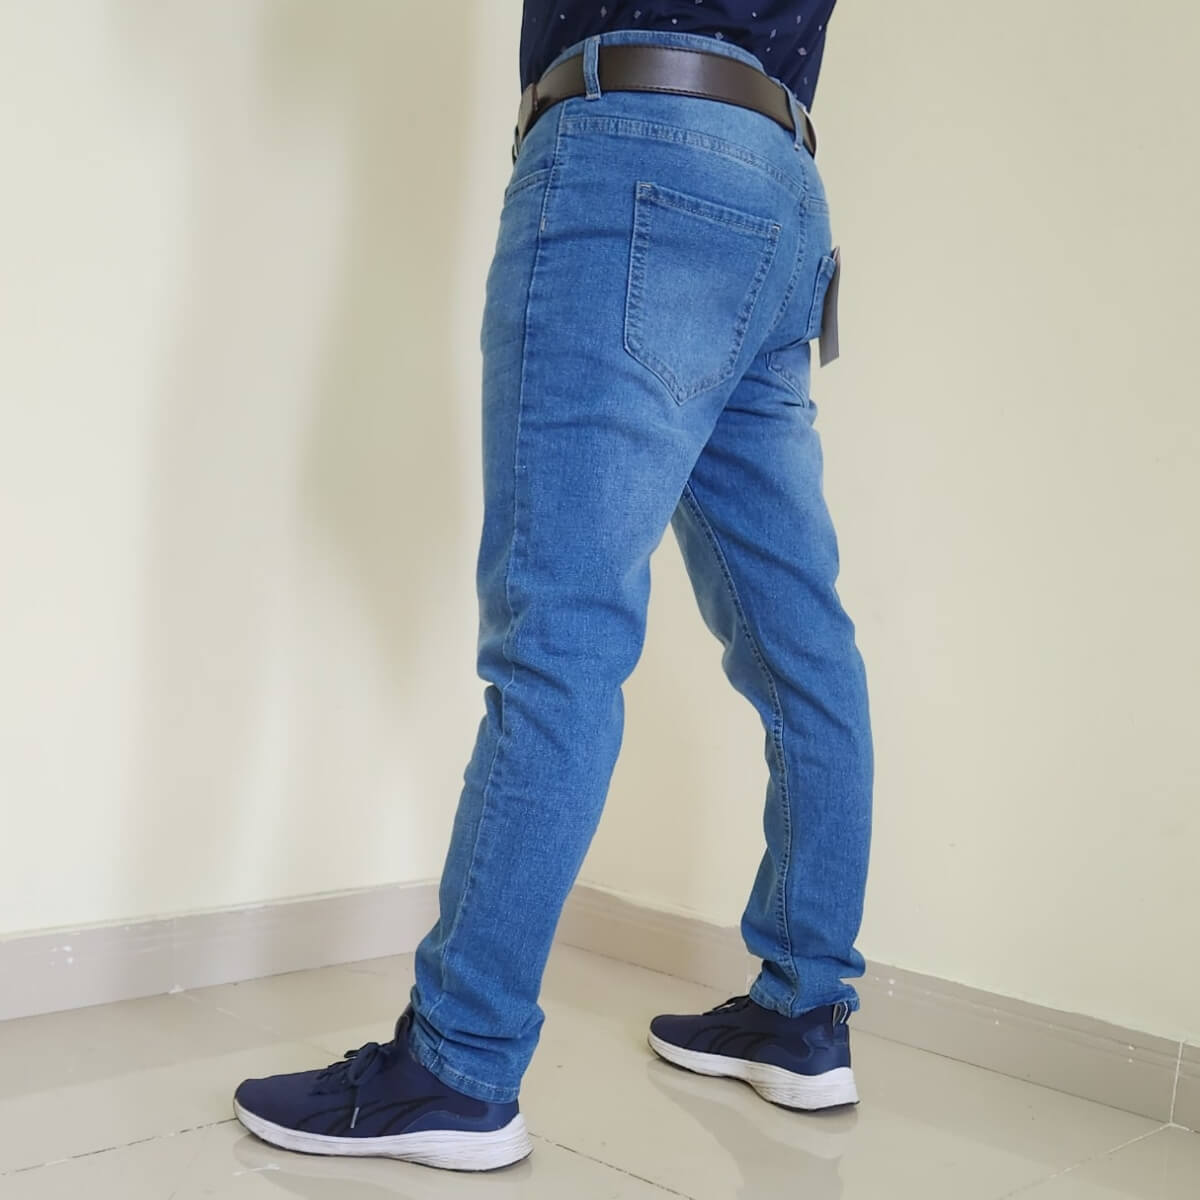 quần jeans dài nam màu xanh co giãn mã md27